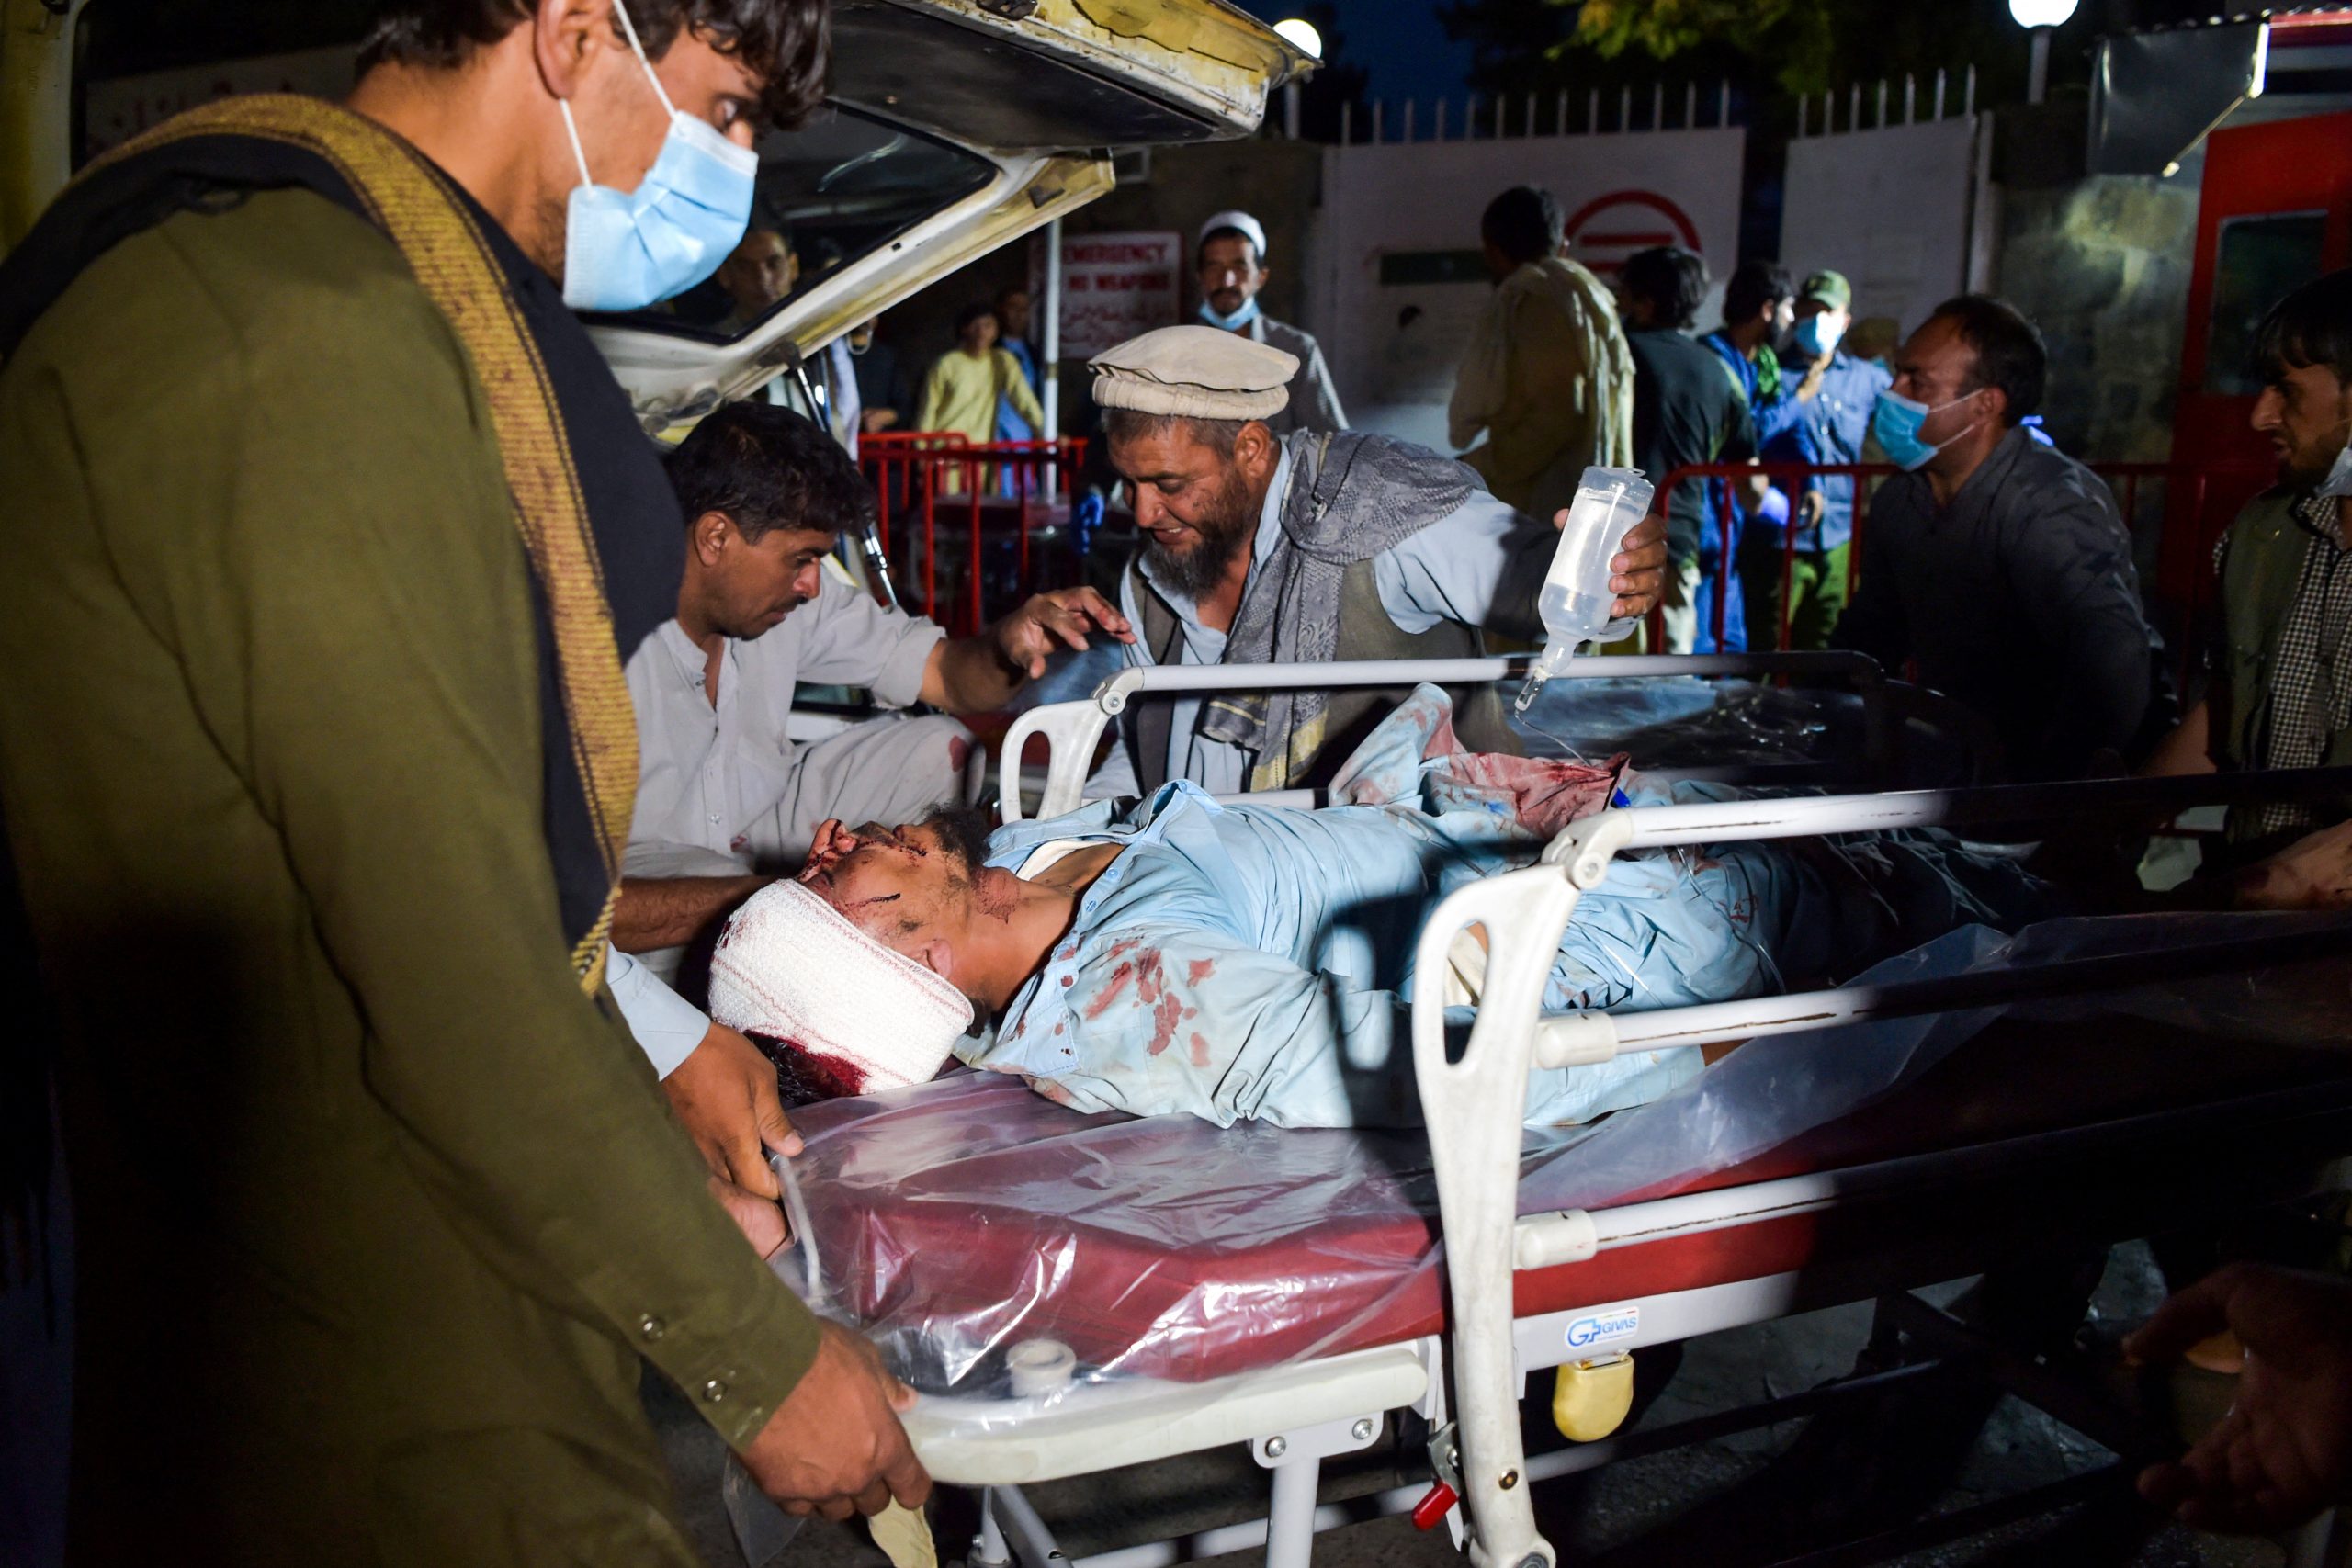 El primer ataque se perpetró por medio de un coche bomba suicida. Foto: Wakil Kohsar/AFP